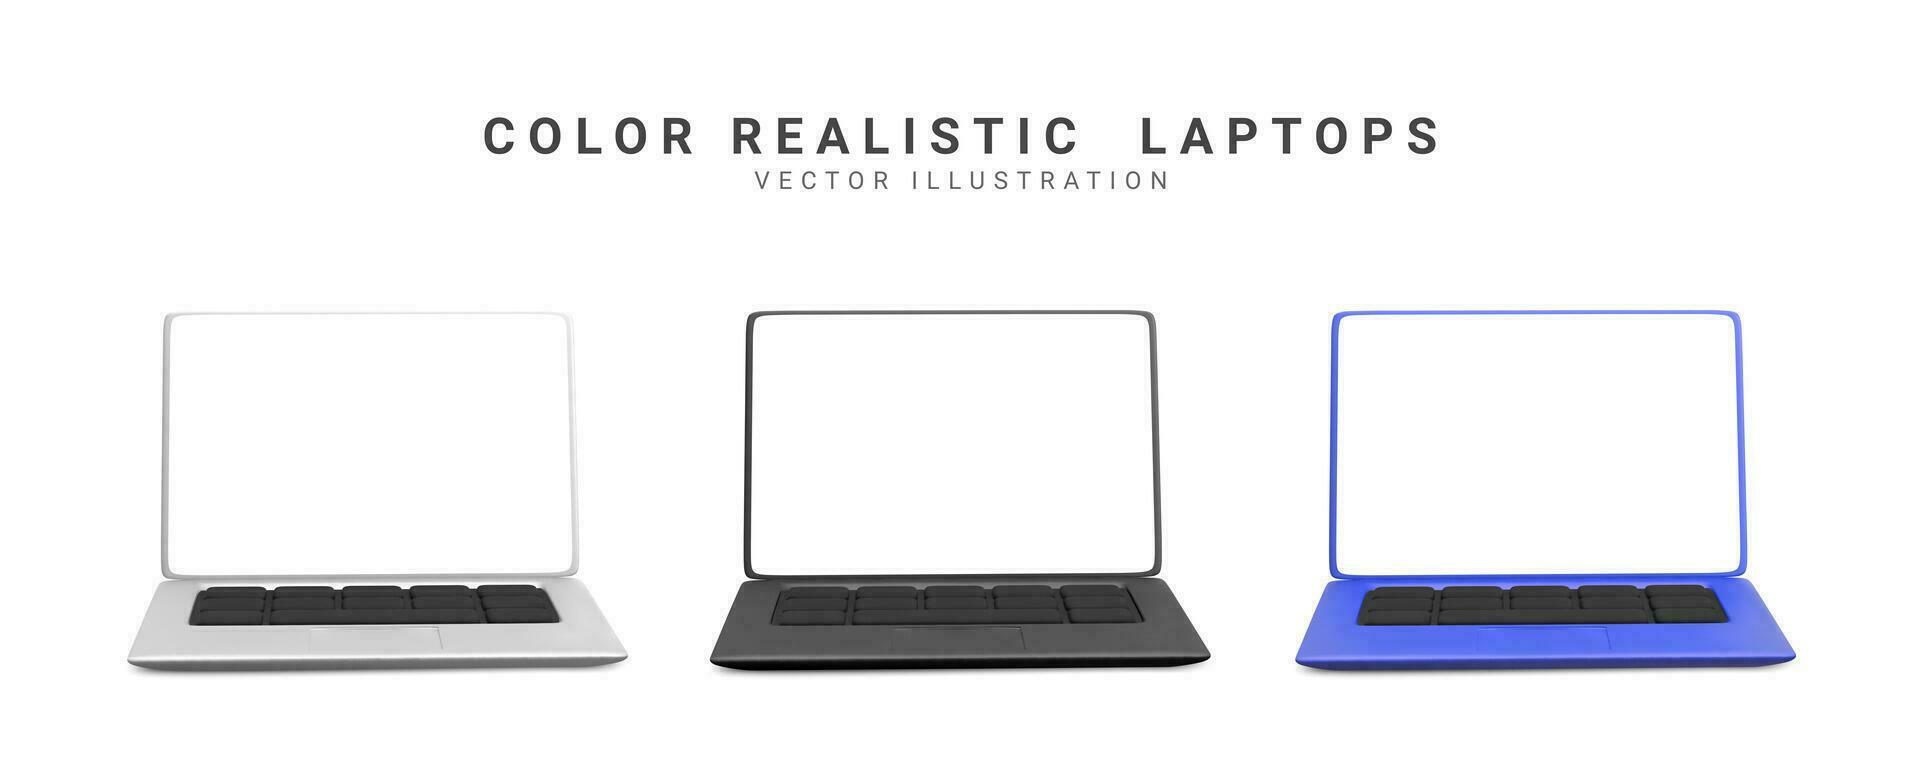 3d realistisk uppsättning bärbara datorer i blå, silver, svart färger med skugga. vektor illustration